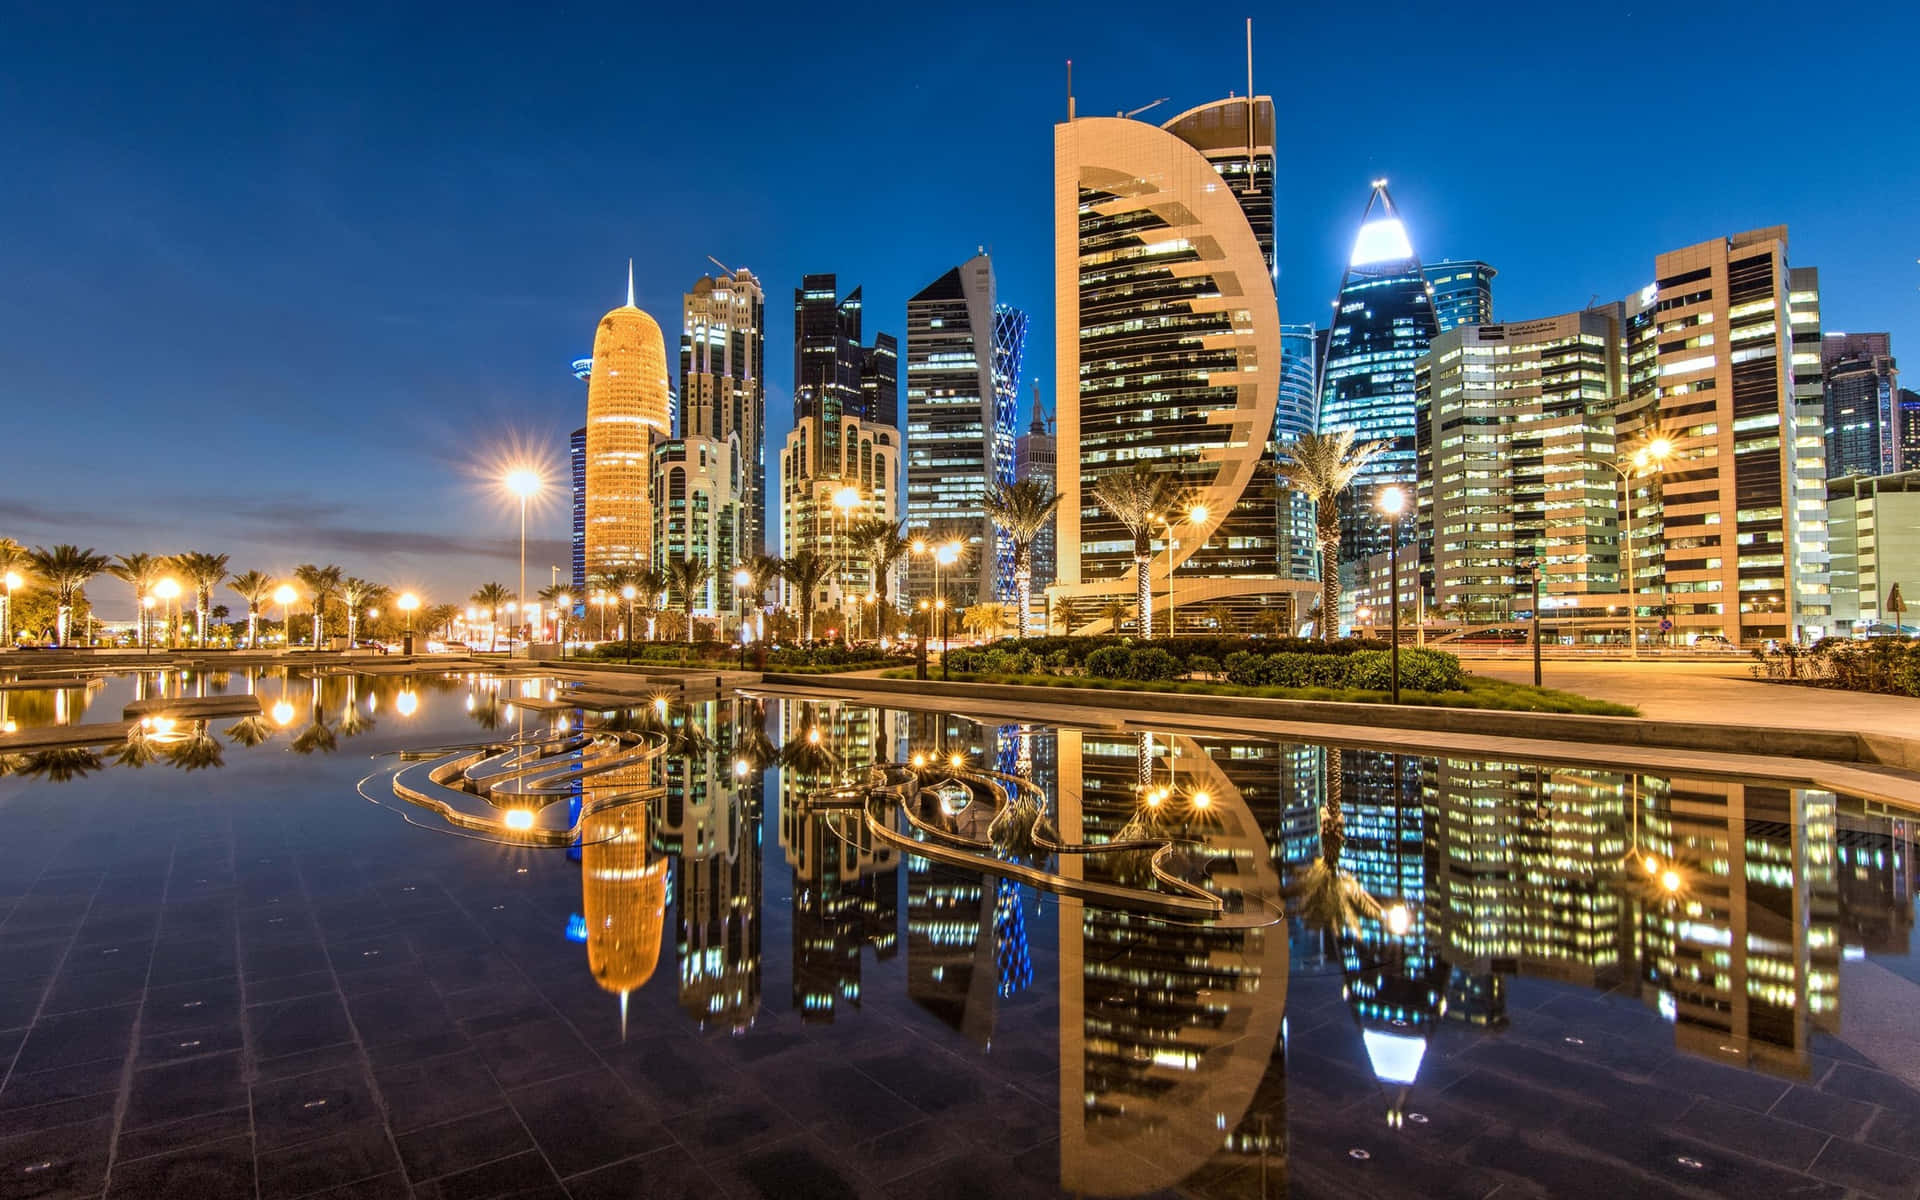 Bienvenidoa La Deslumbrante Ciudad De Doha, Qatar.